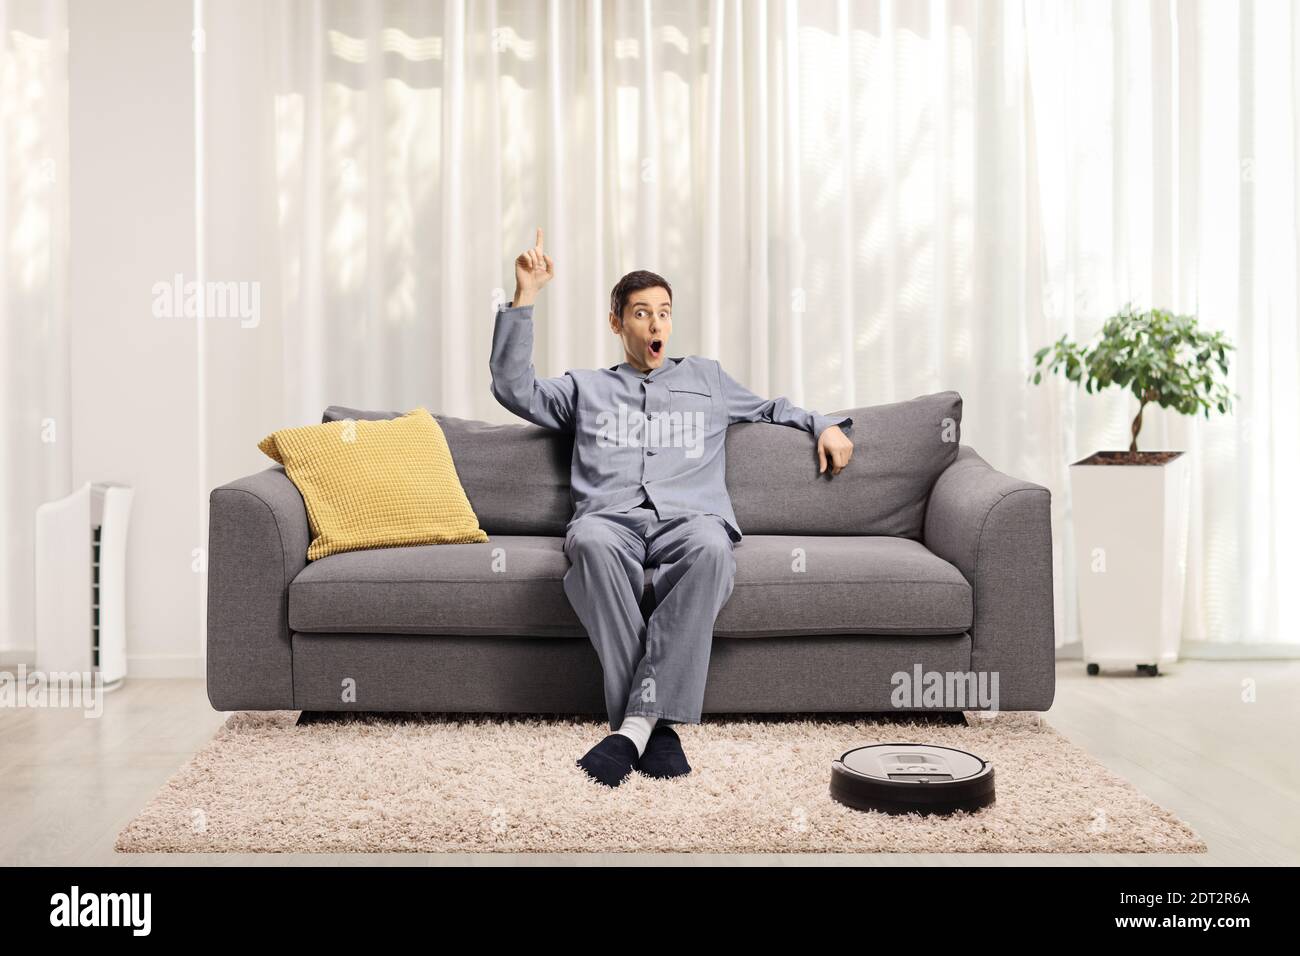 Junge aufgeregt Mann in Pyjamas auf einem Sofa sitzen Nach oben zeigen und ein Roboter-Staubsauger auf dem Boden Stockfoto